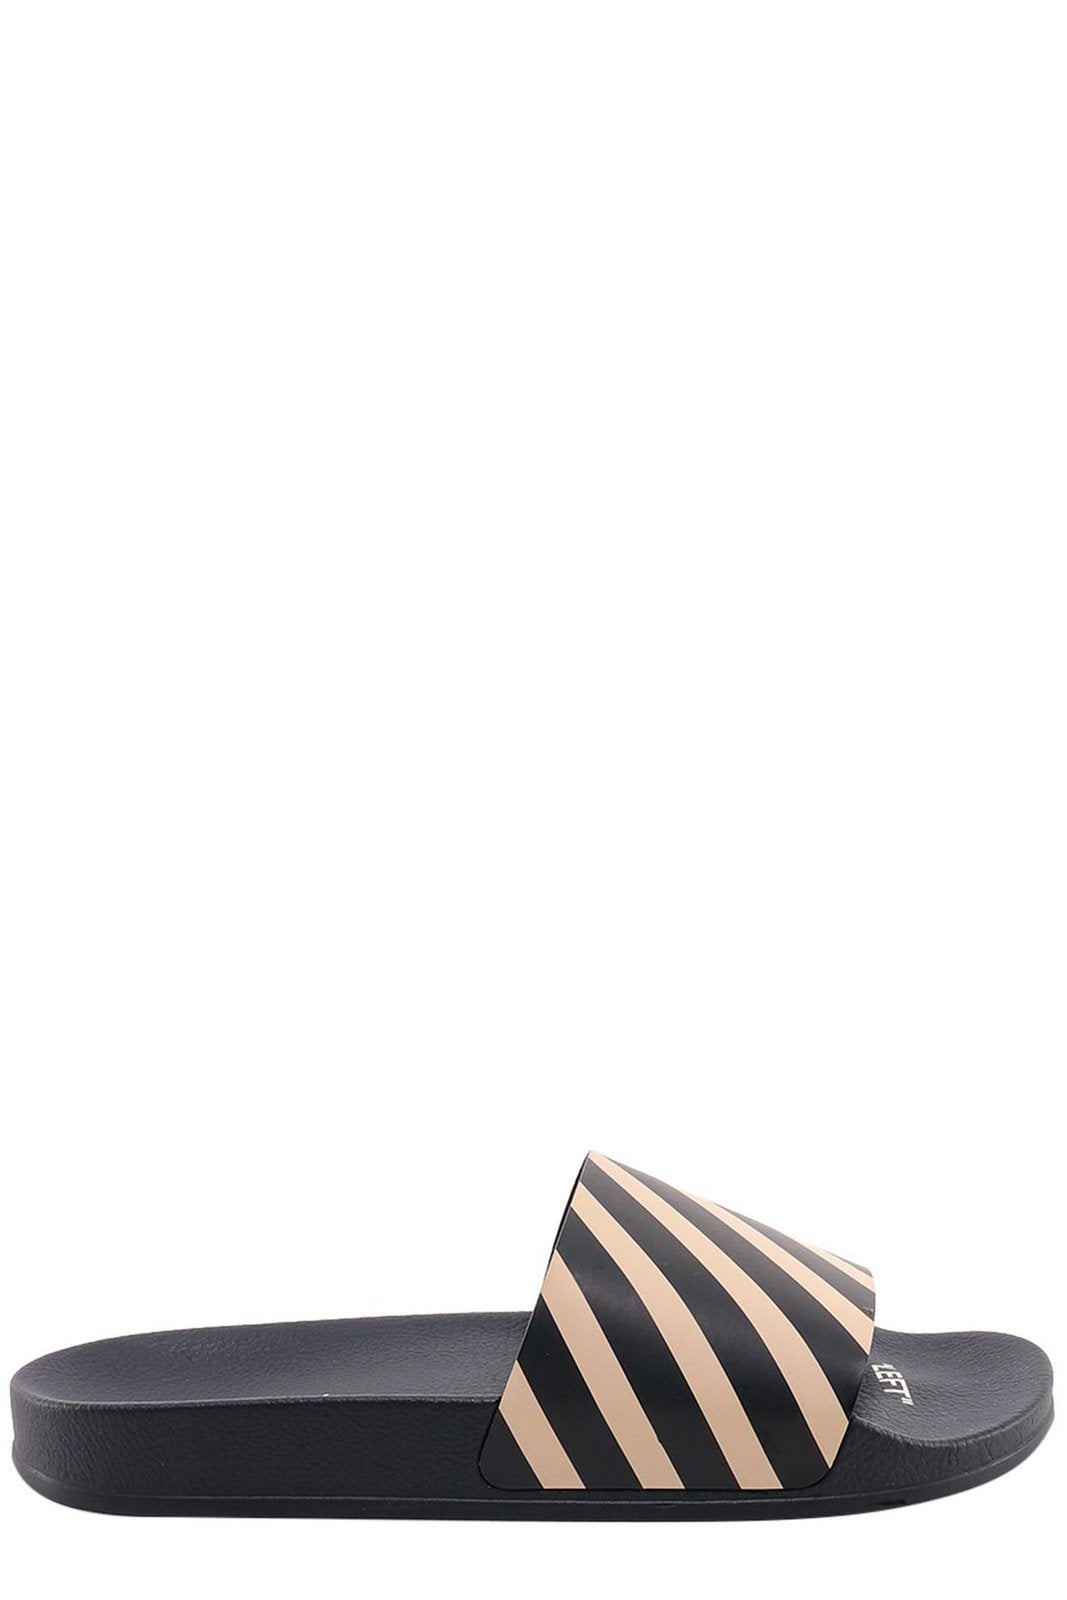 Off-White Diag-Stripe Printed Slip-On Slides